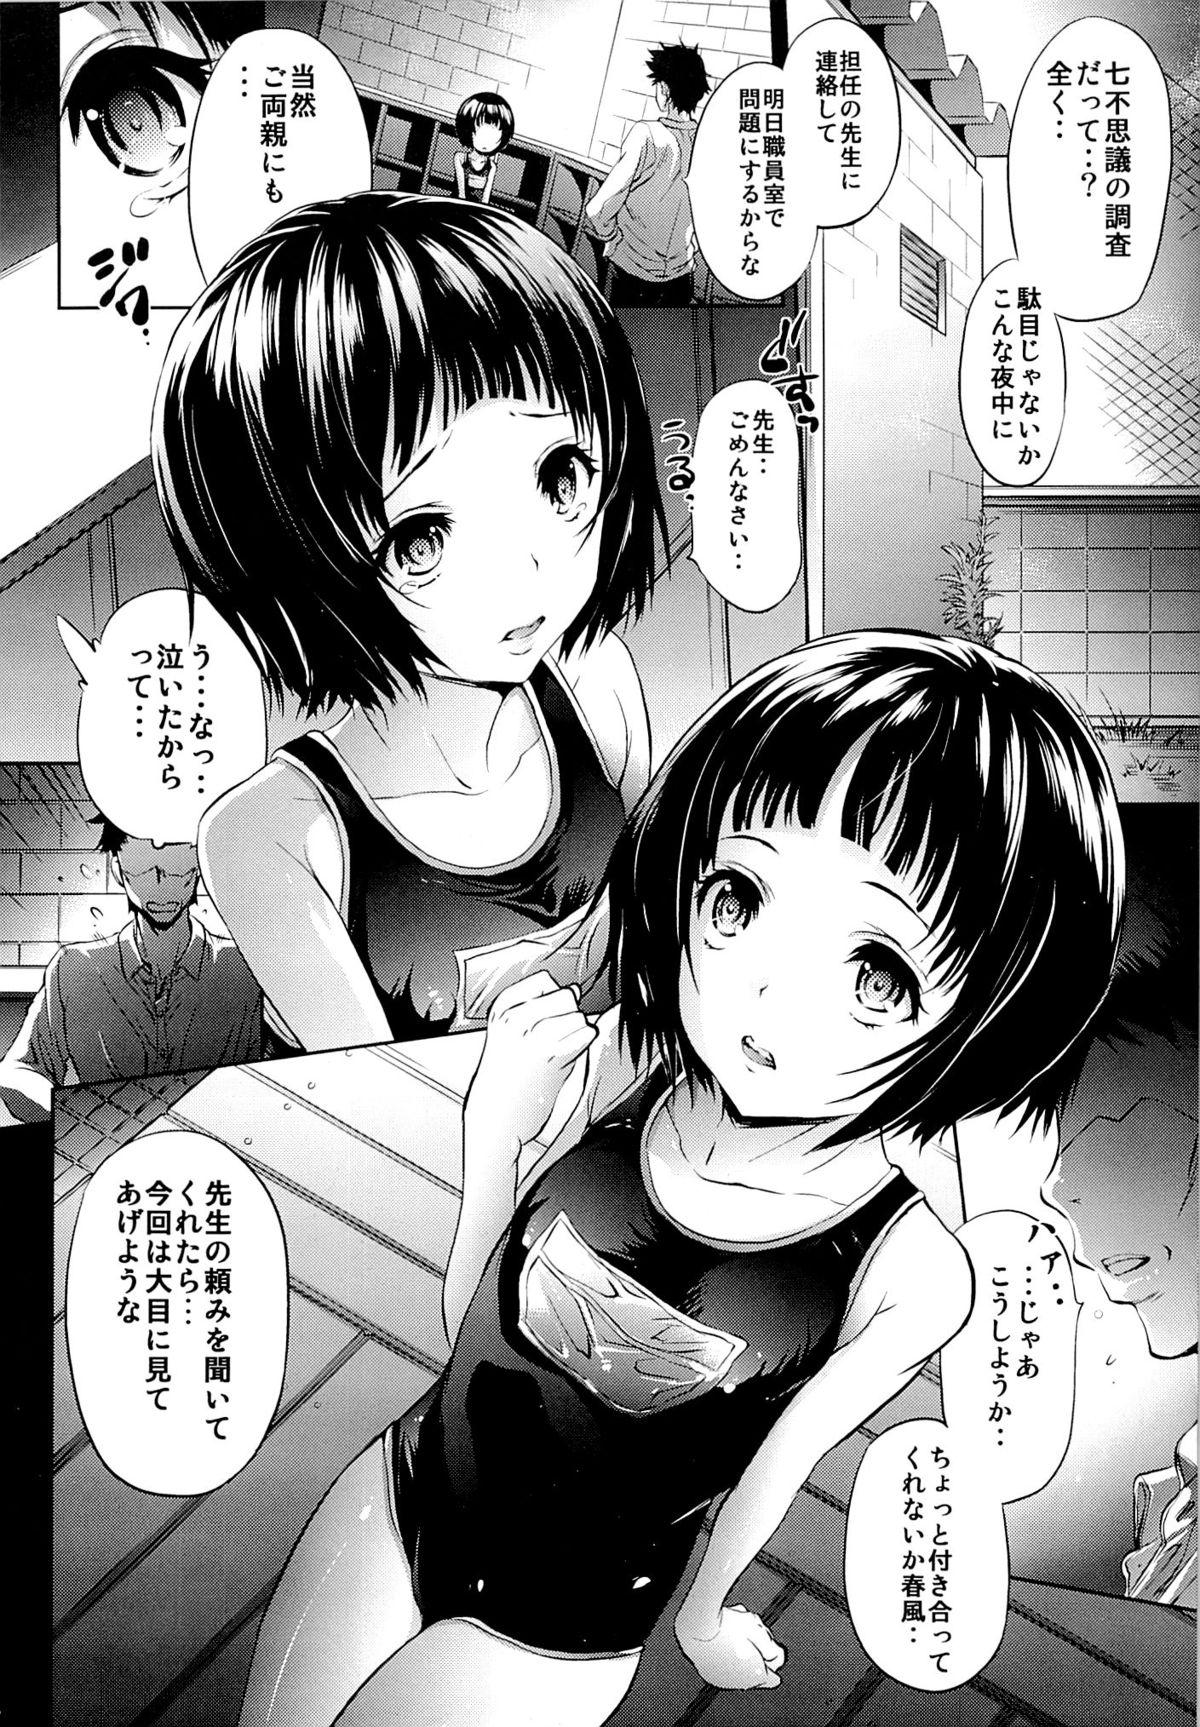 Babysitter Mujaki no Darakuen - Mujaki no rakuen Bunduda - Page 3